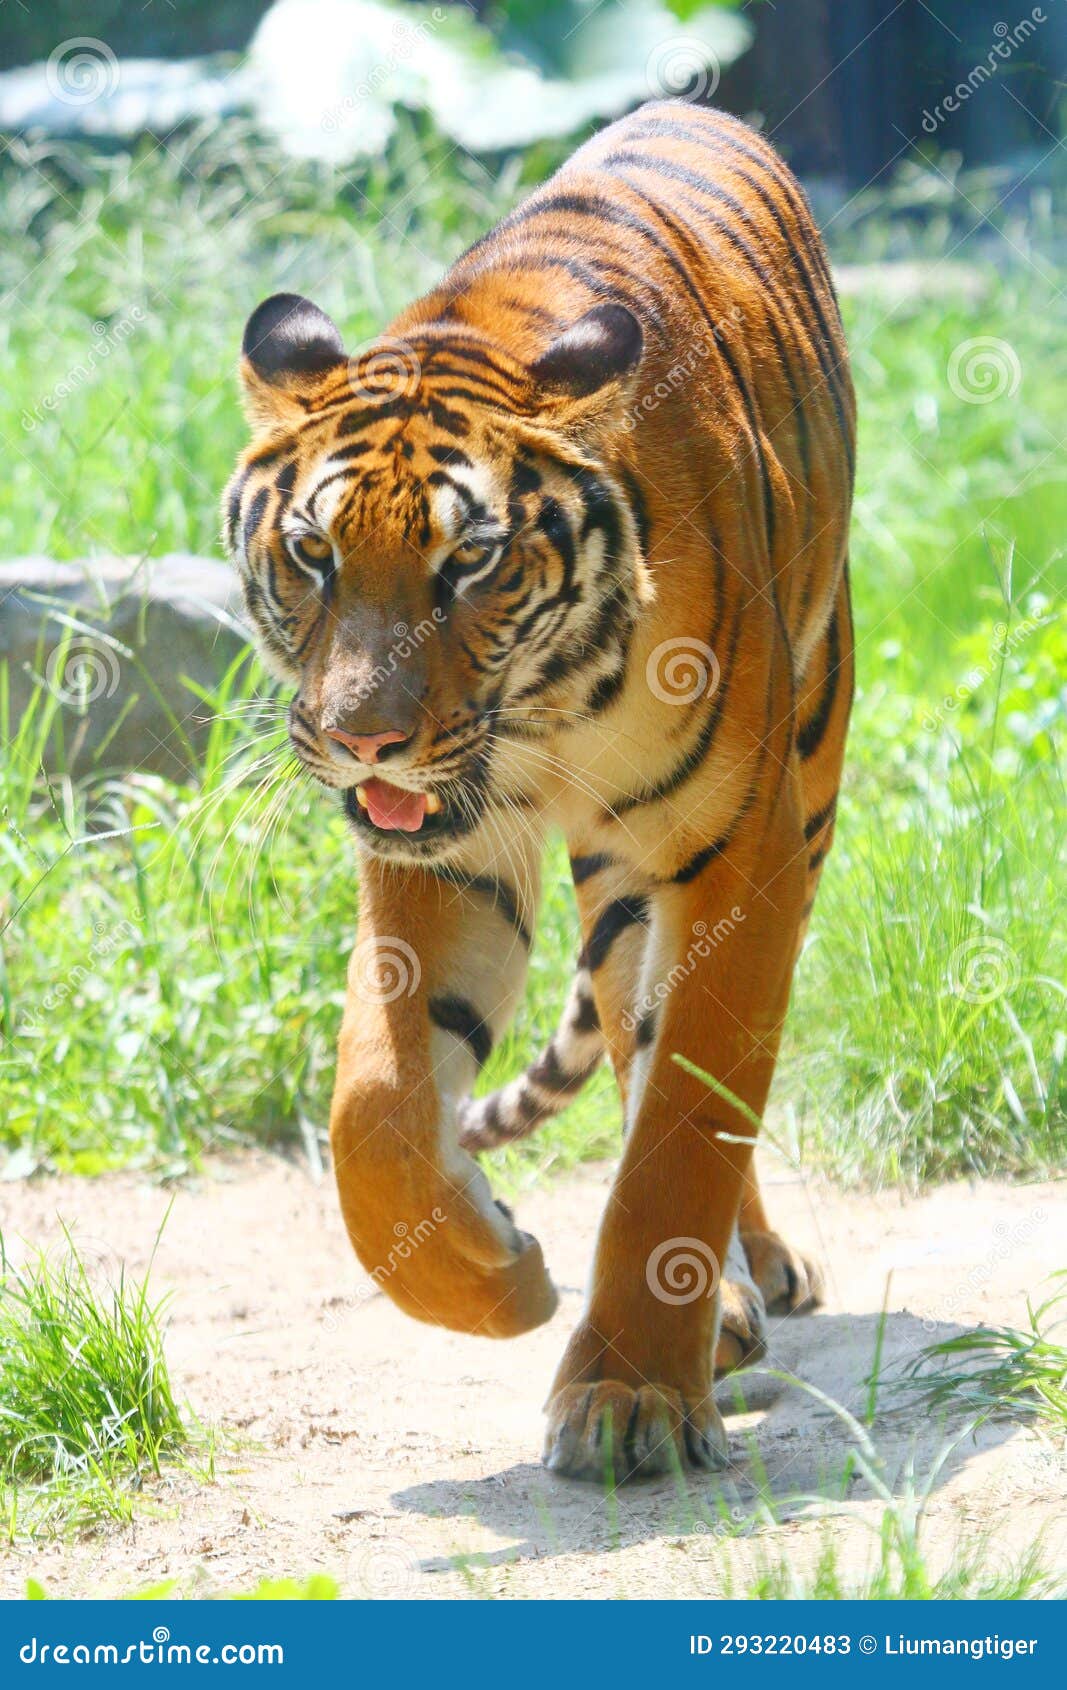 south china tiger walking